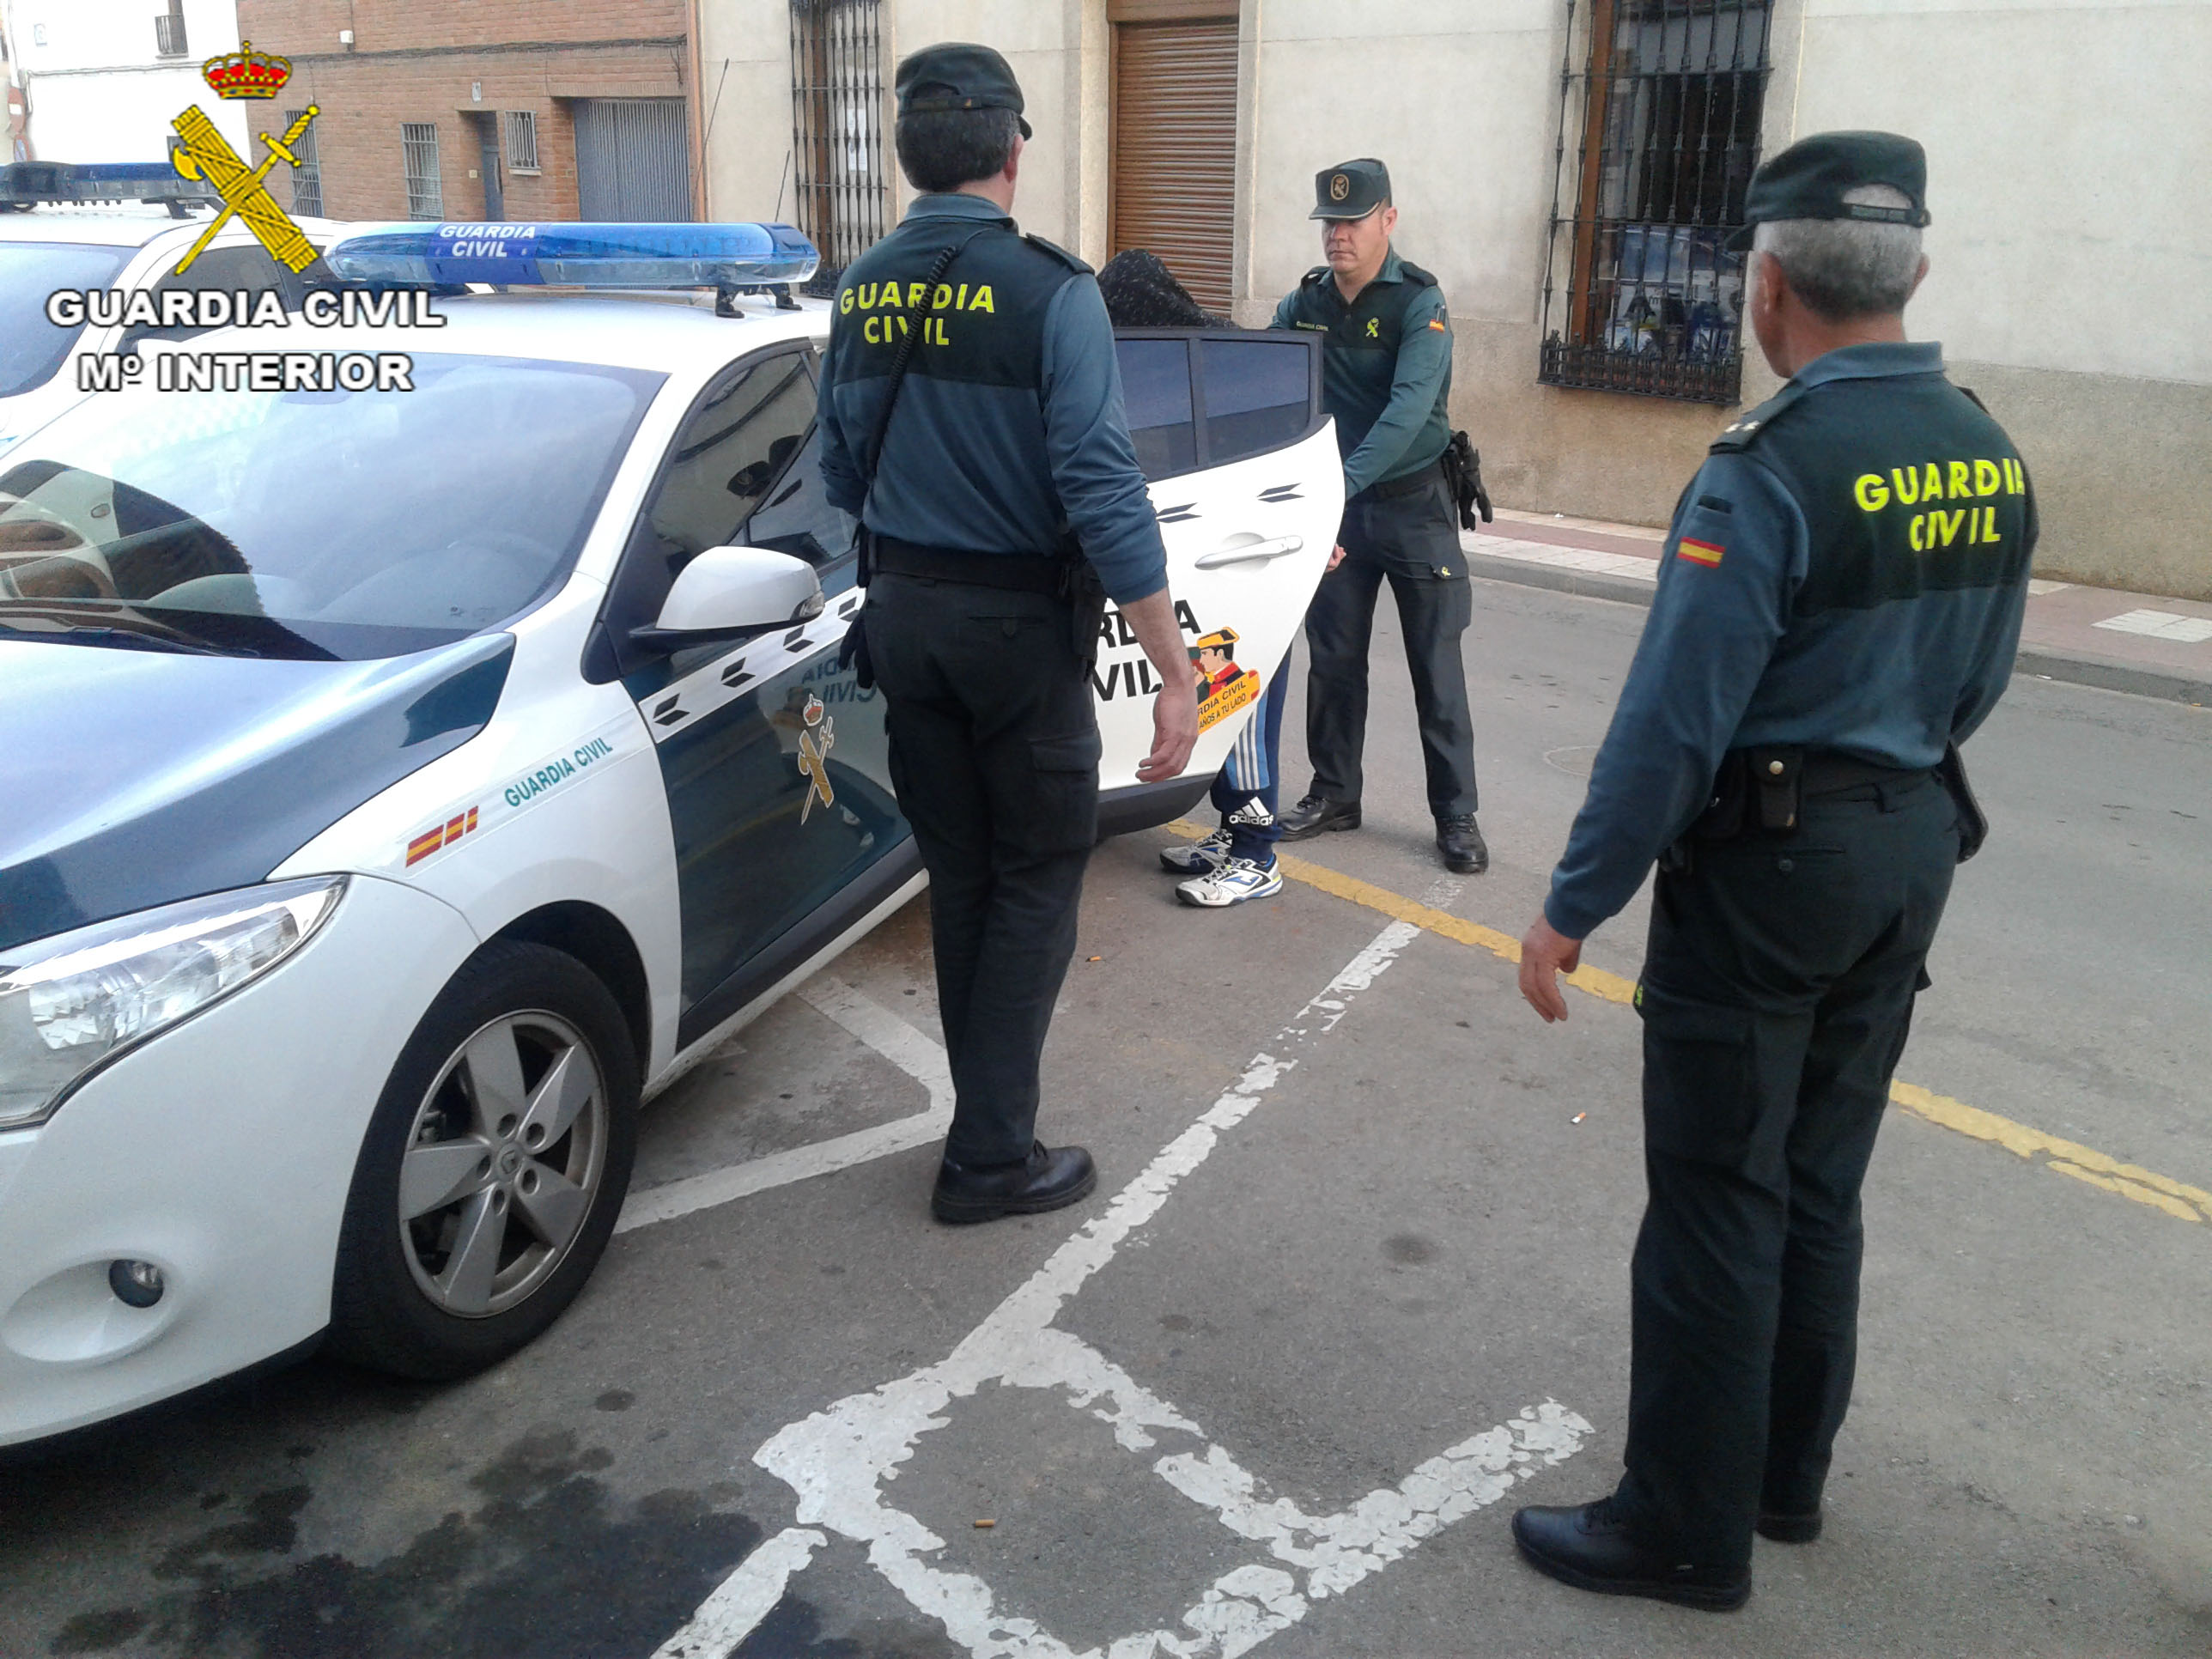 La Guardia Civil detuvo a los sospechosos. Foto de archivo.